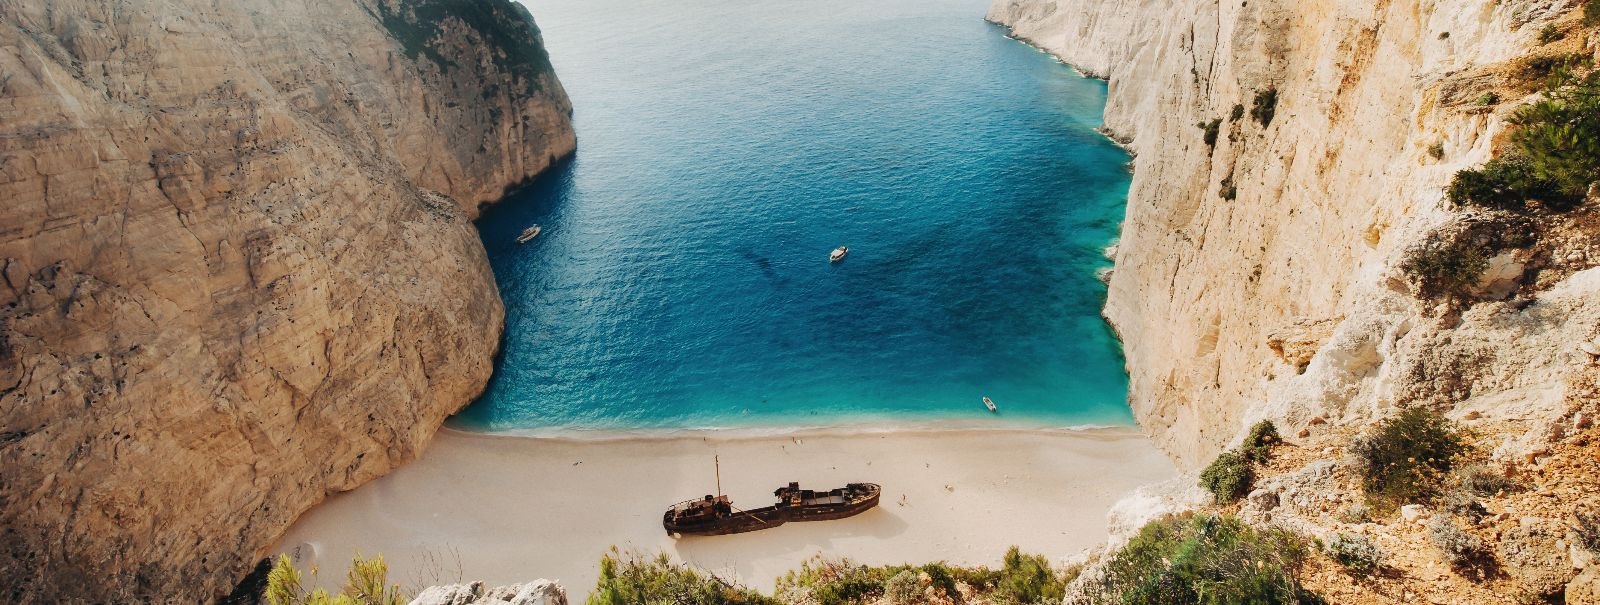 Kreeka on riik, mis on sünonüüm päikesepaisteliste randade, ...